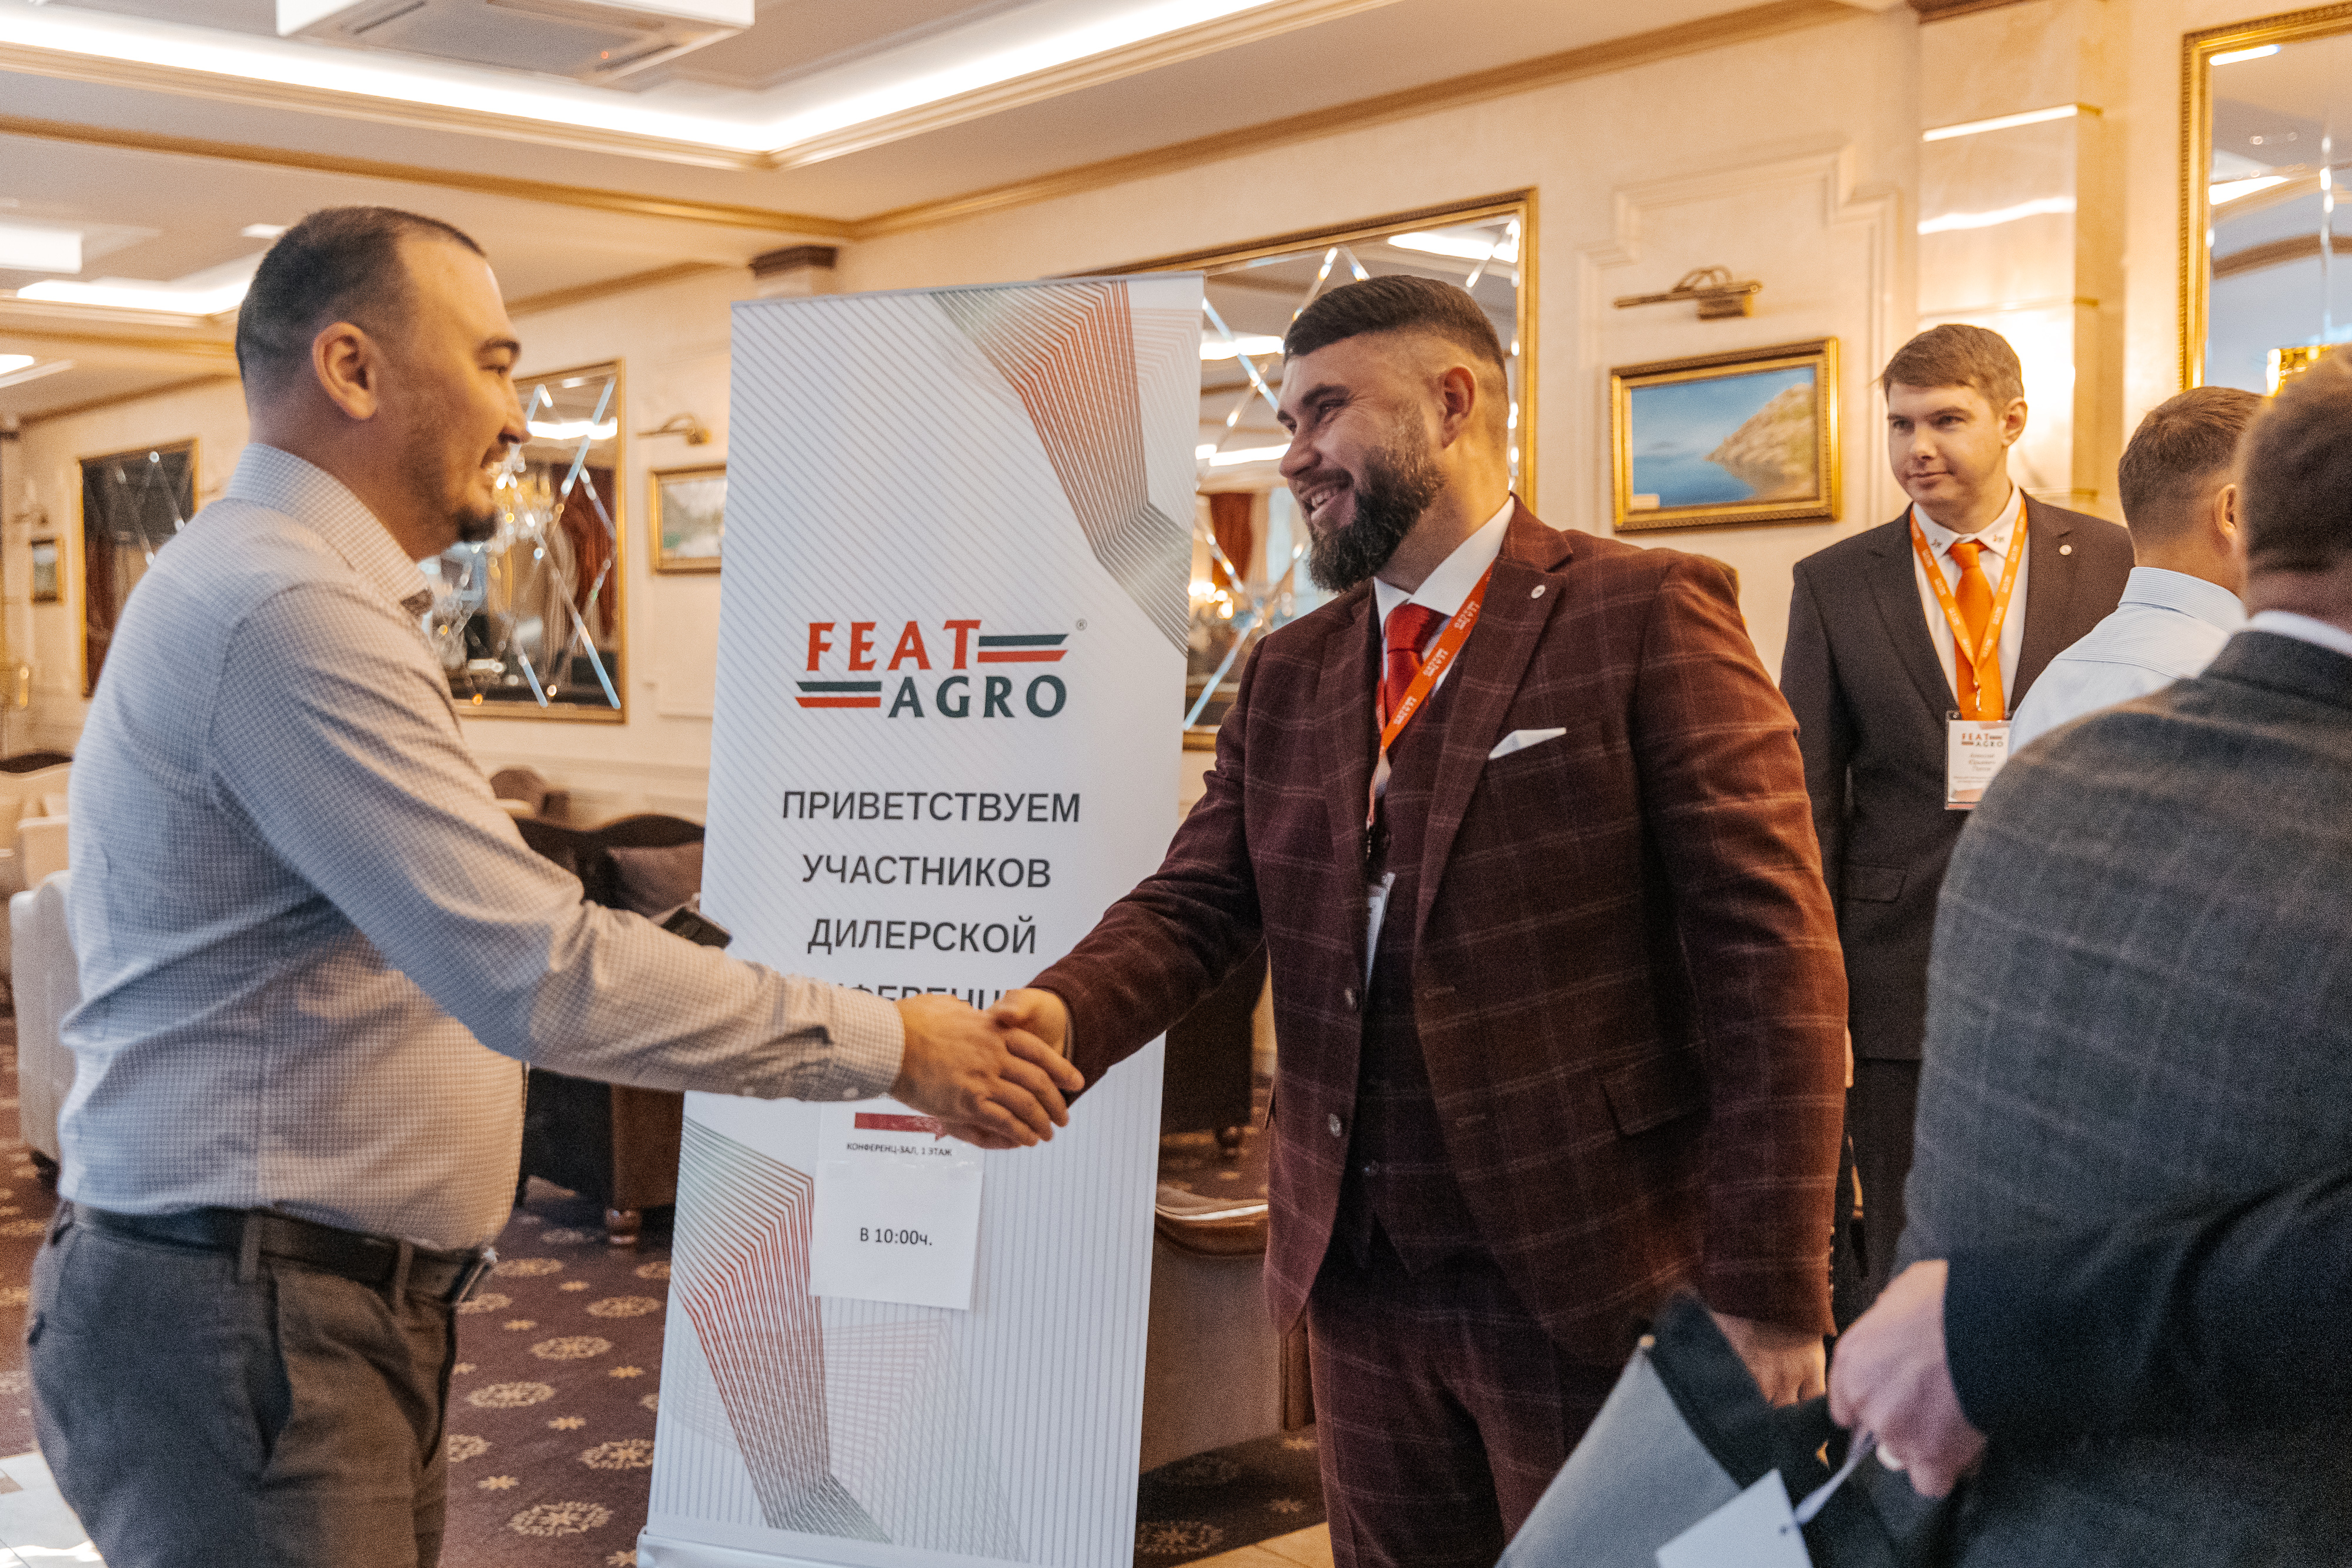 VI дилерская конференция бренда FEATAGRO прошла в Барнауле с 23 по 24 января